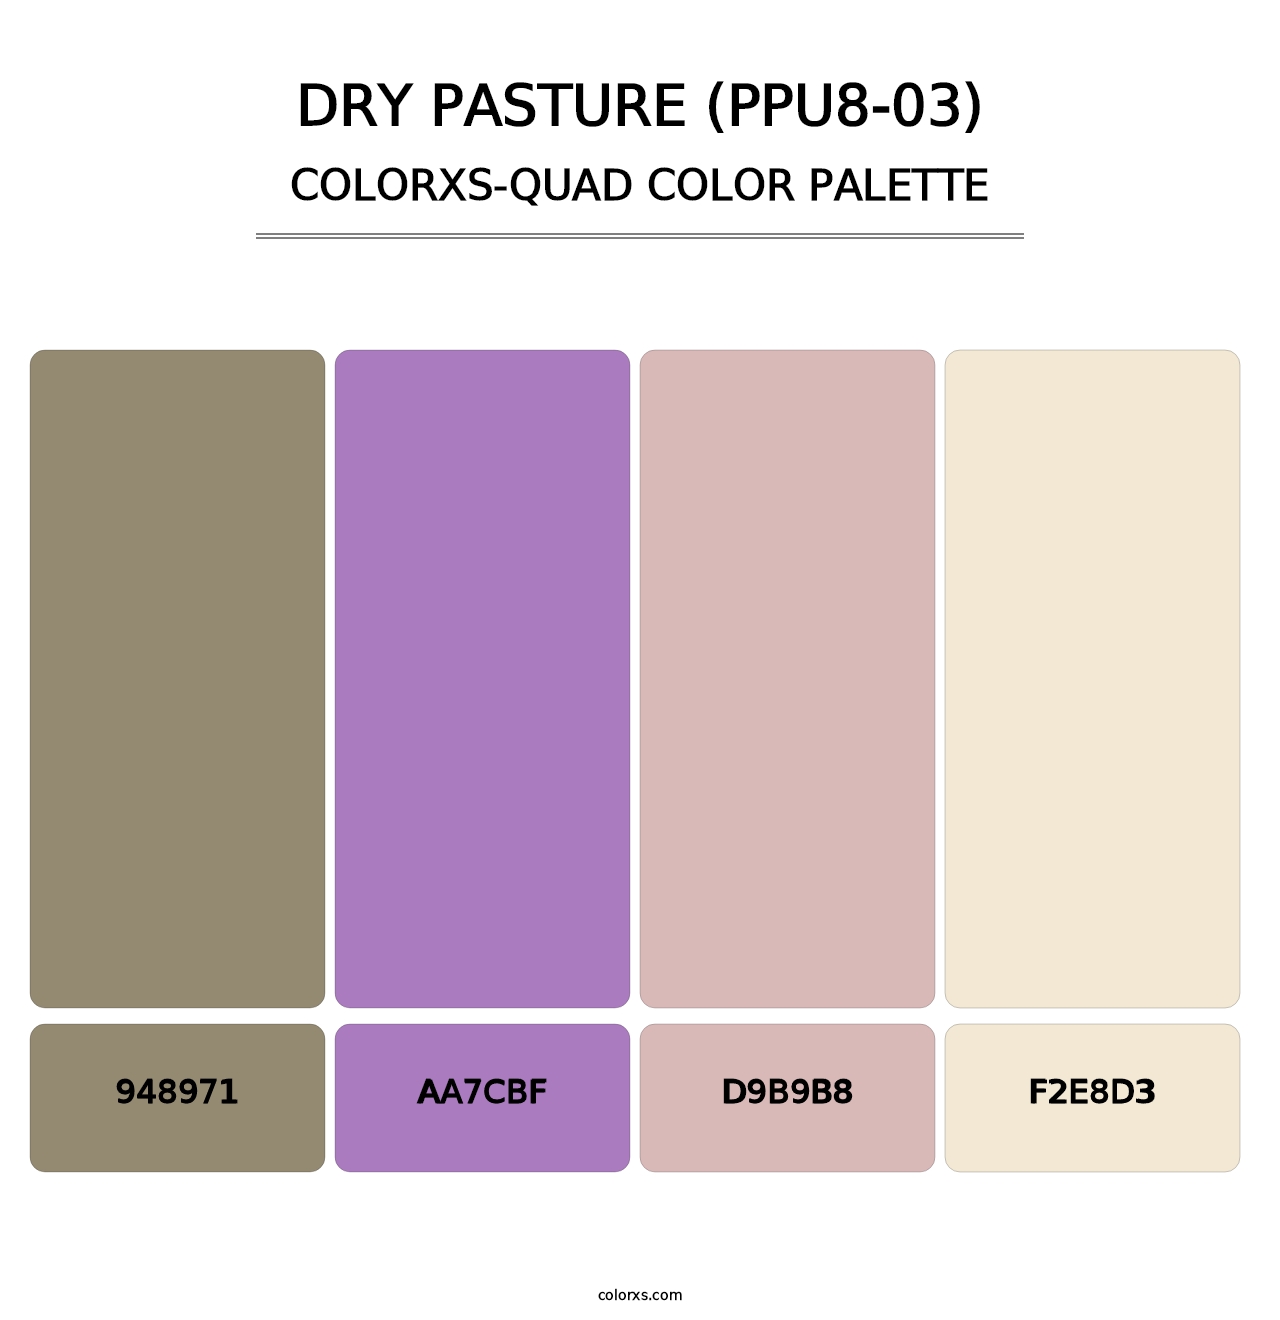 Dry Pasture (PPU8-03) - Colorxs Quad Palette